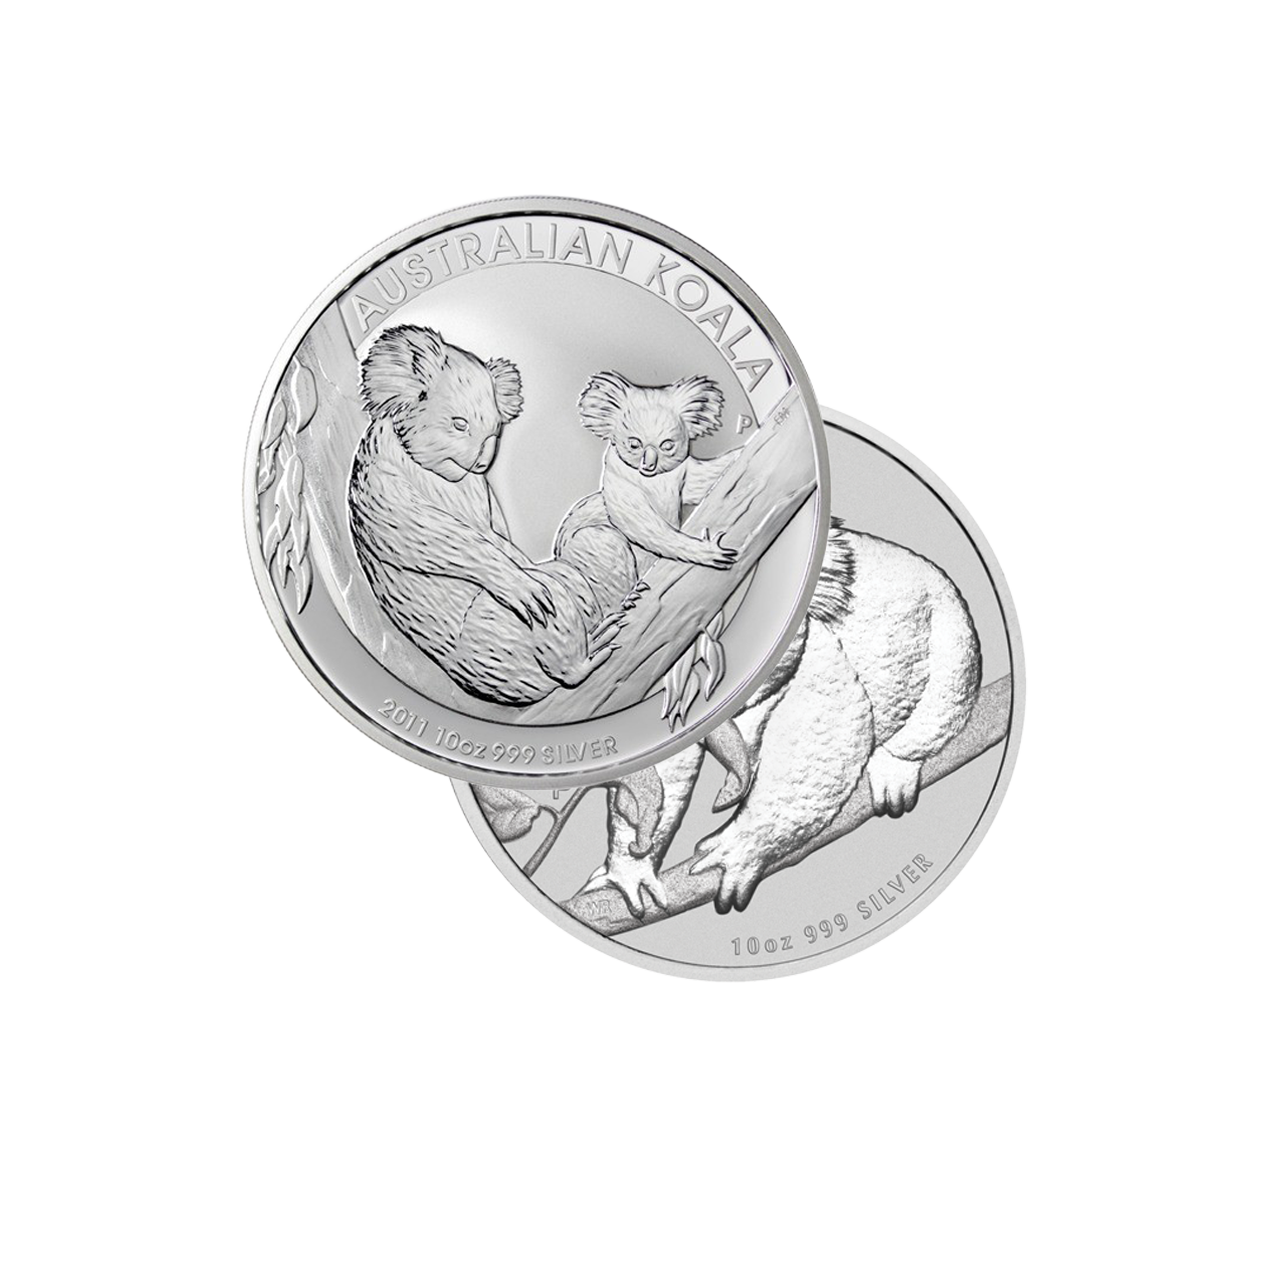 Koala (various years) - Australia 10 oz silver coin